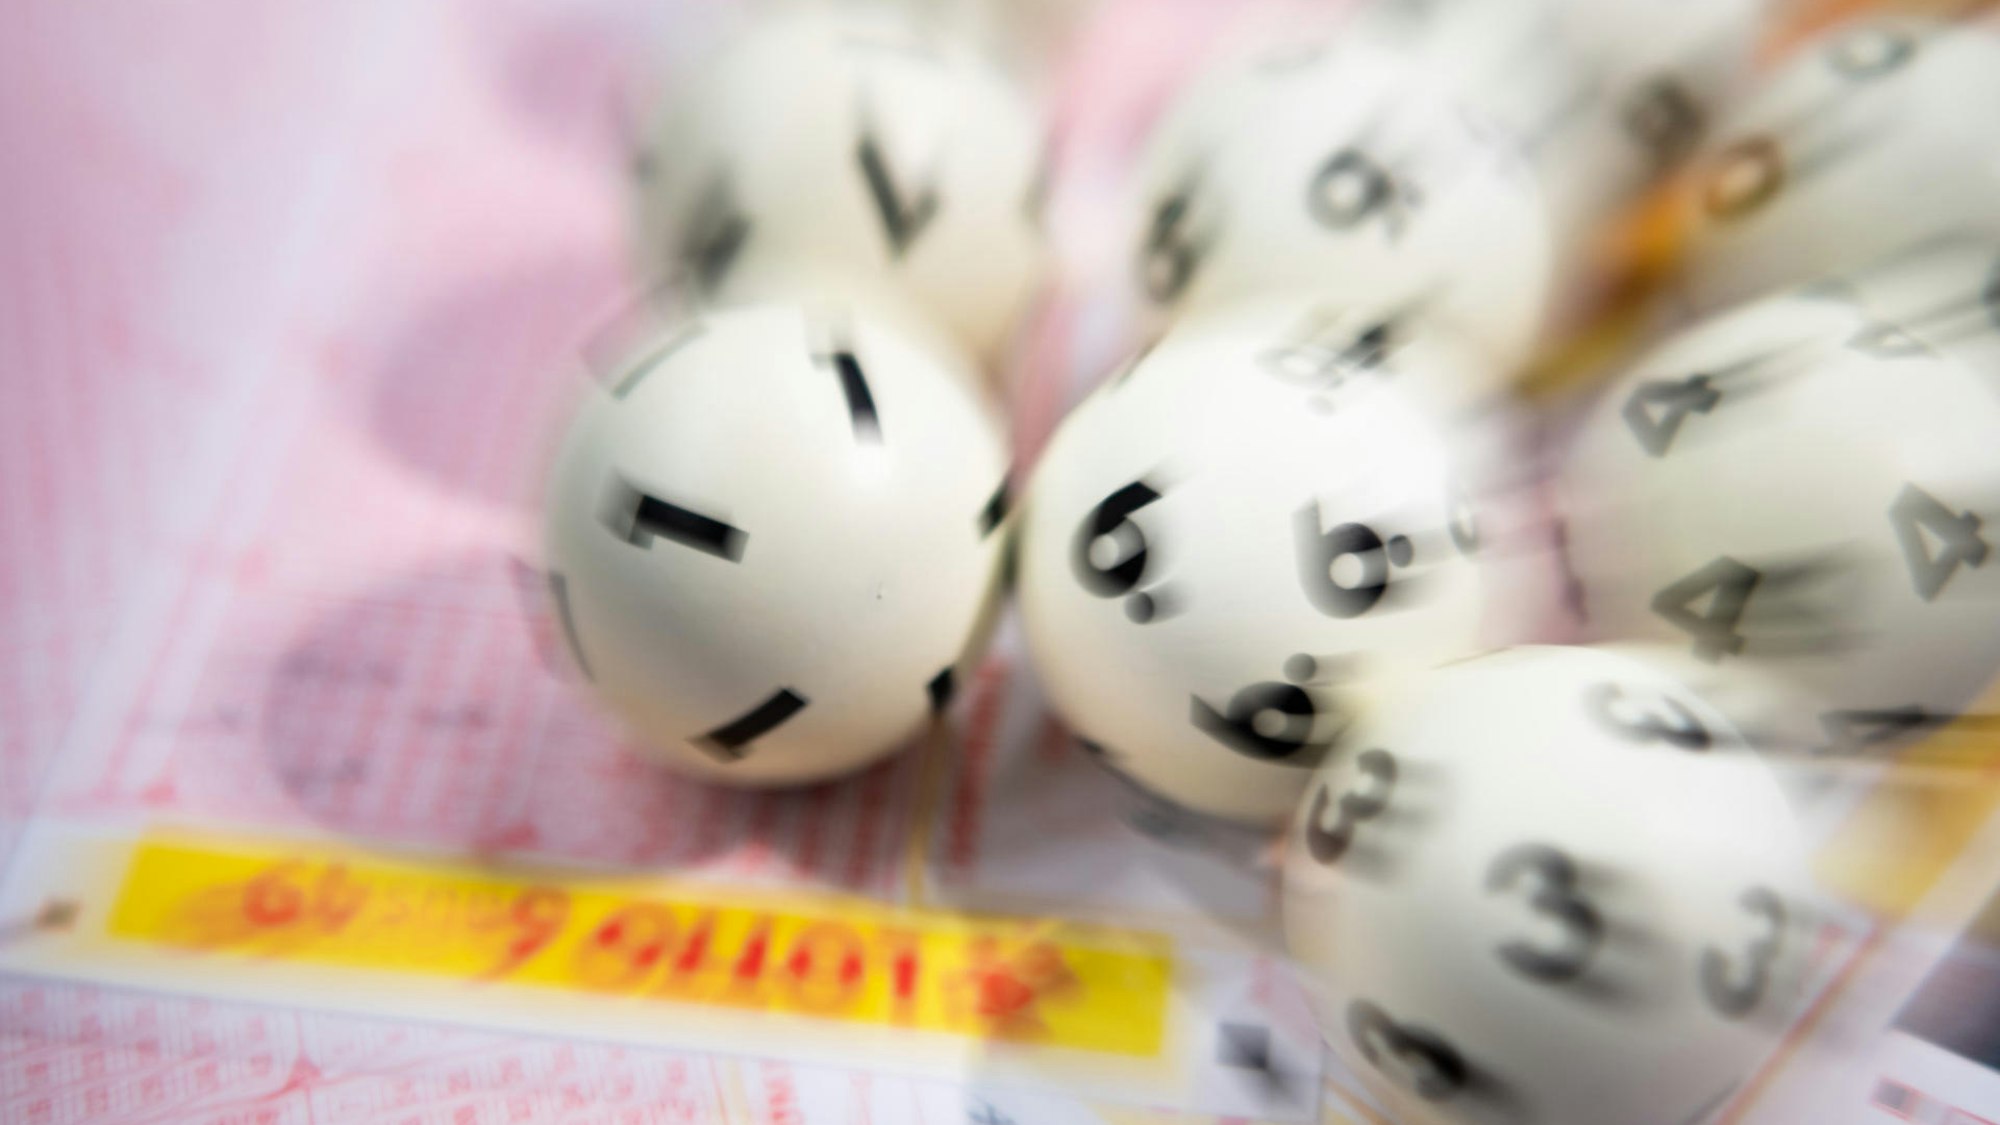 Lotto-Kugeln liegen auf diesem undatierten Foto auf einem Lottoschein (gestellte Szene - Aufnahme mit Zoomeffekt).